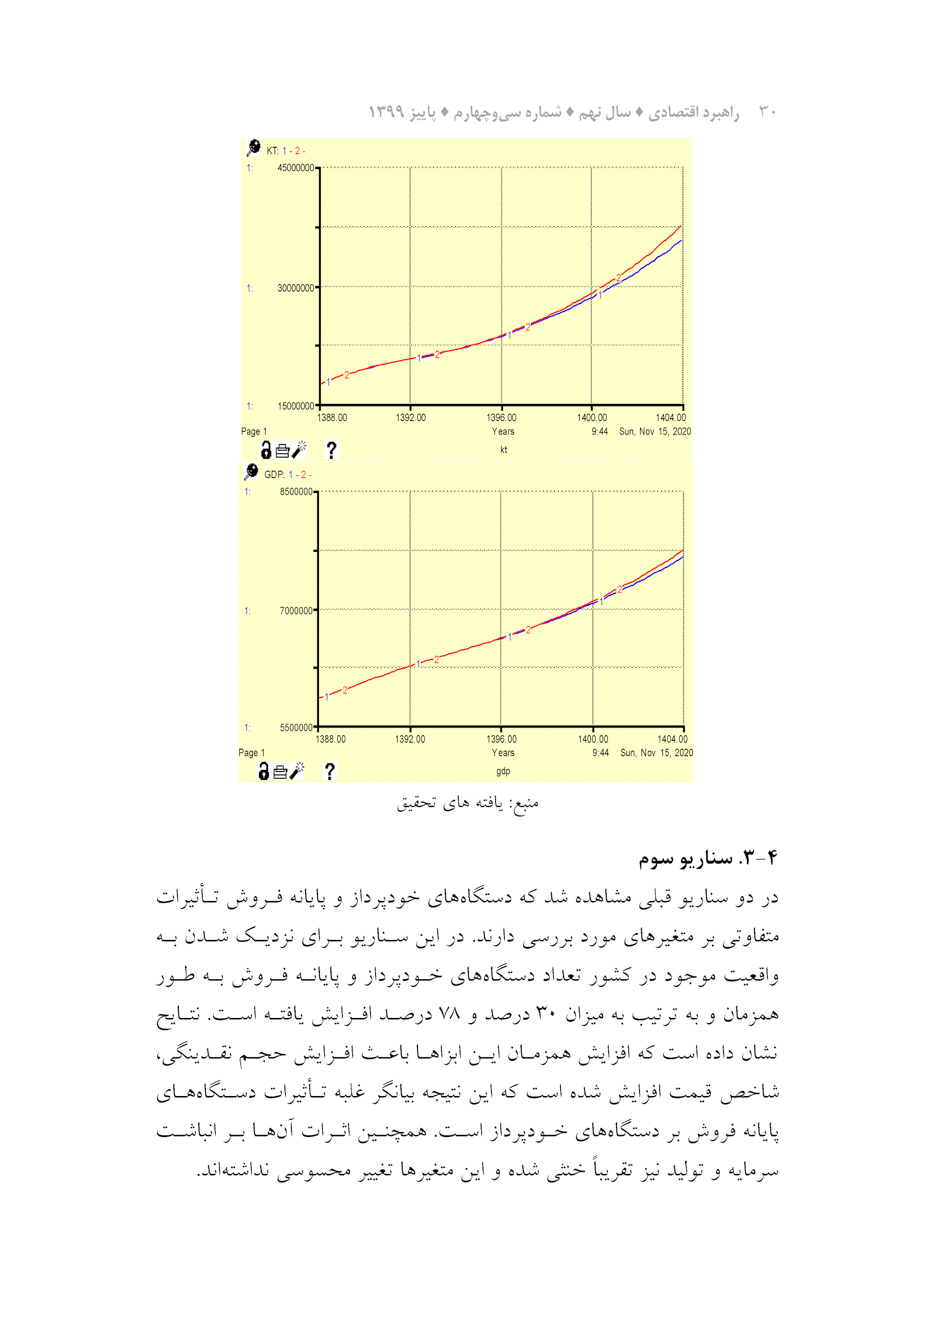 بررسی تأثیر بانکداری الکترونیکی بر متغیرهای منتخب اقتصاد کلان ایران با رویکرد پویایی سیستم